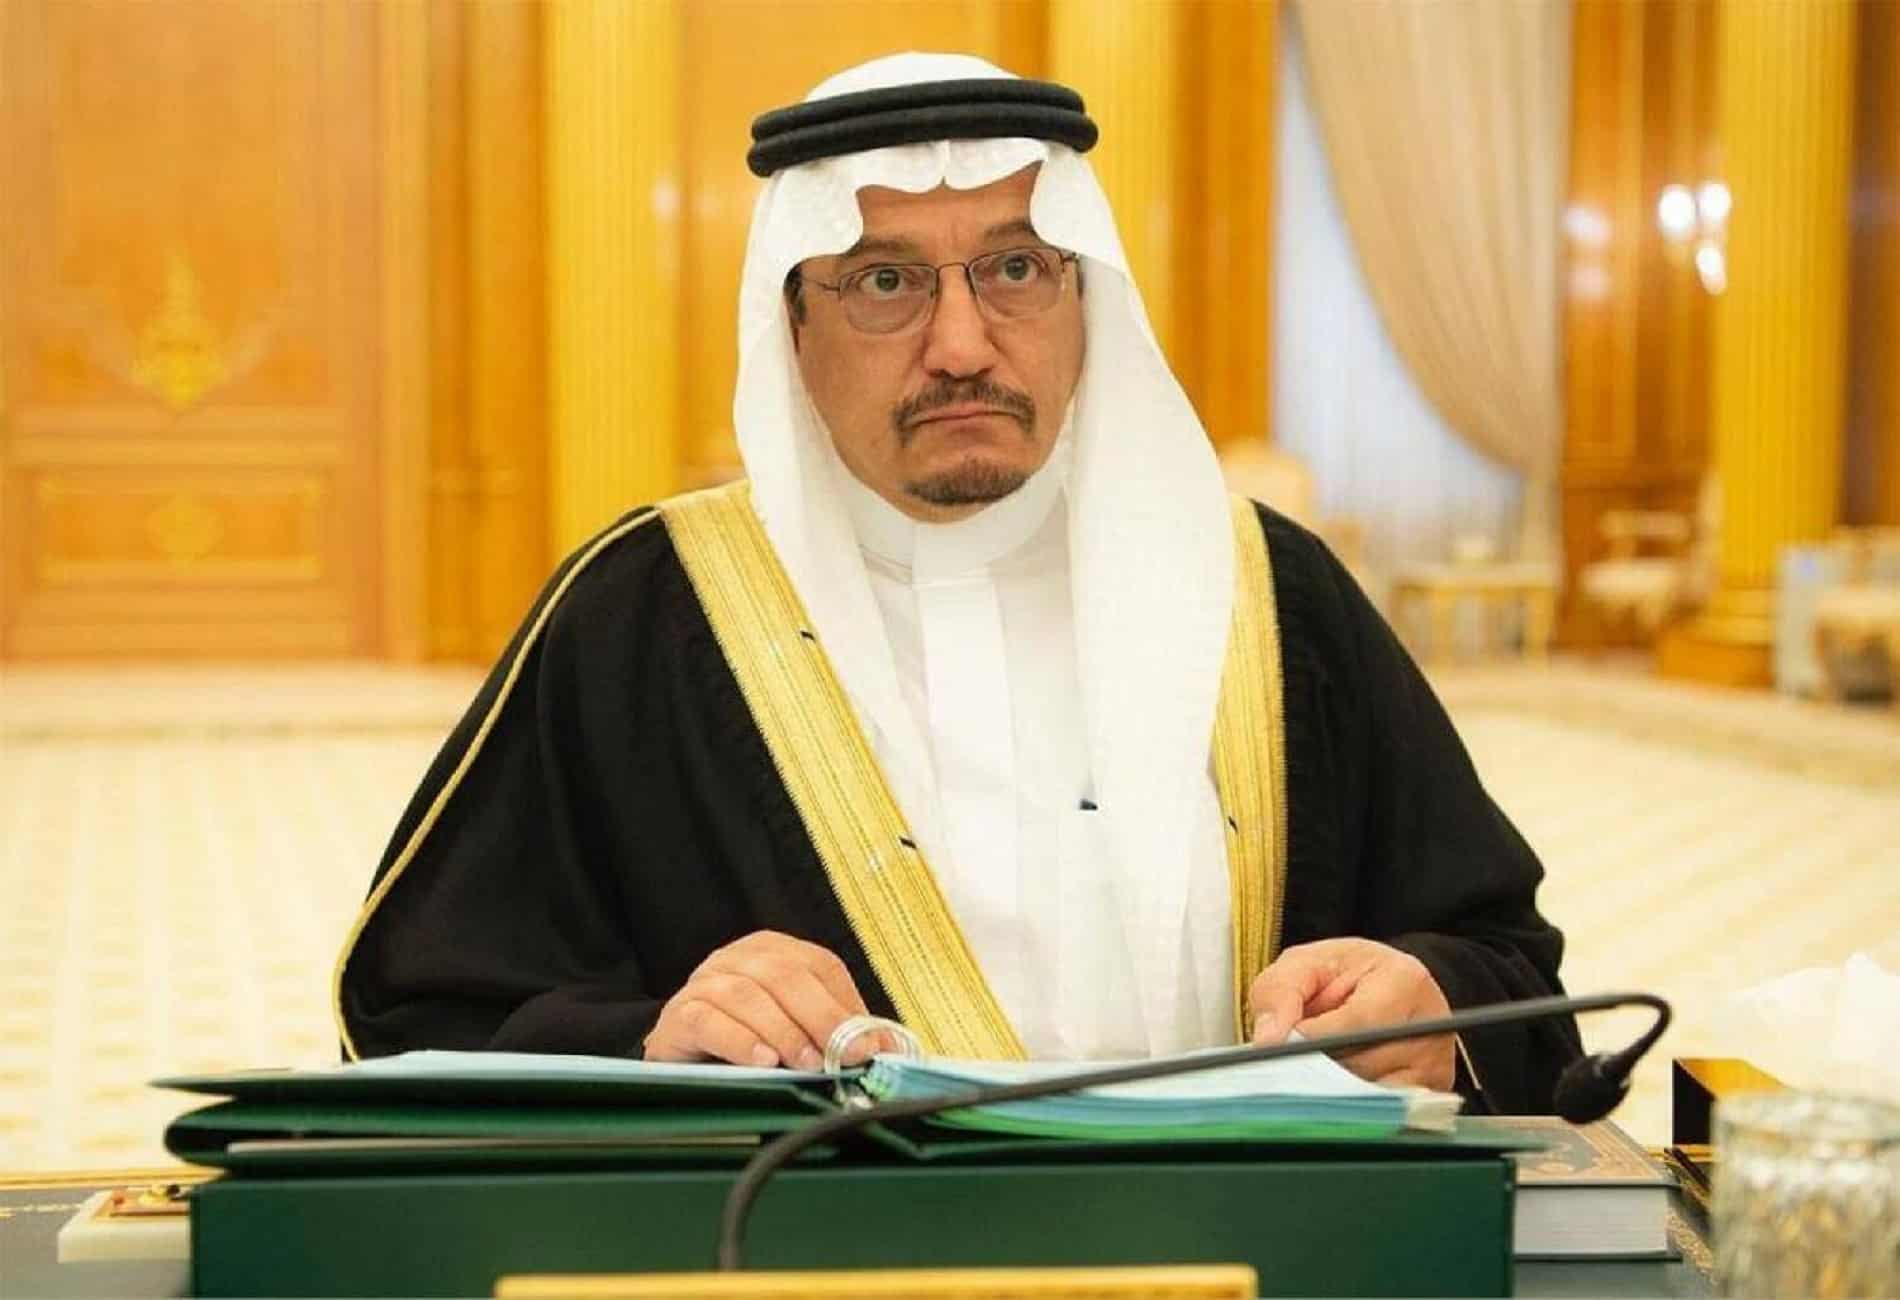   وزير التعليم السعودي يفتتح 8 مشروعات تعليمية بالمنطقة الشرقية